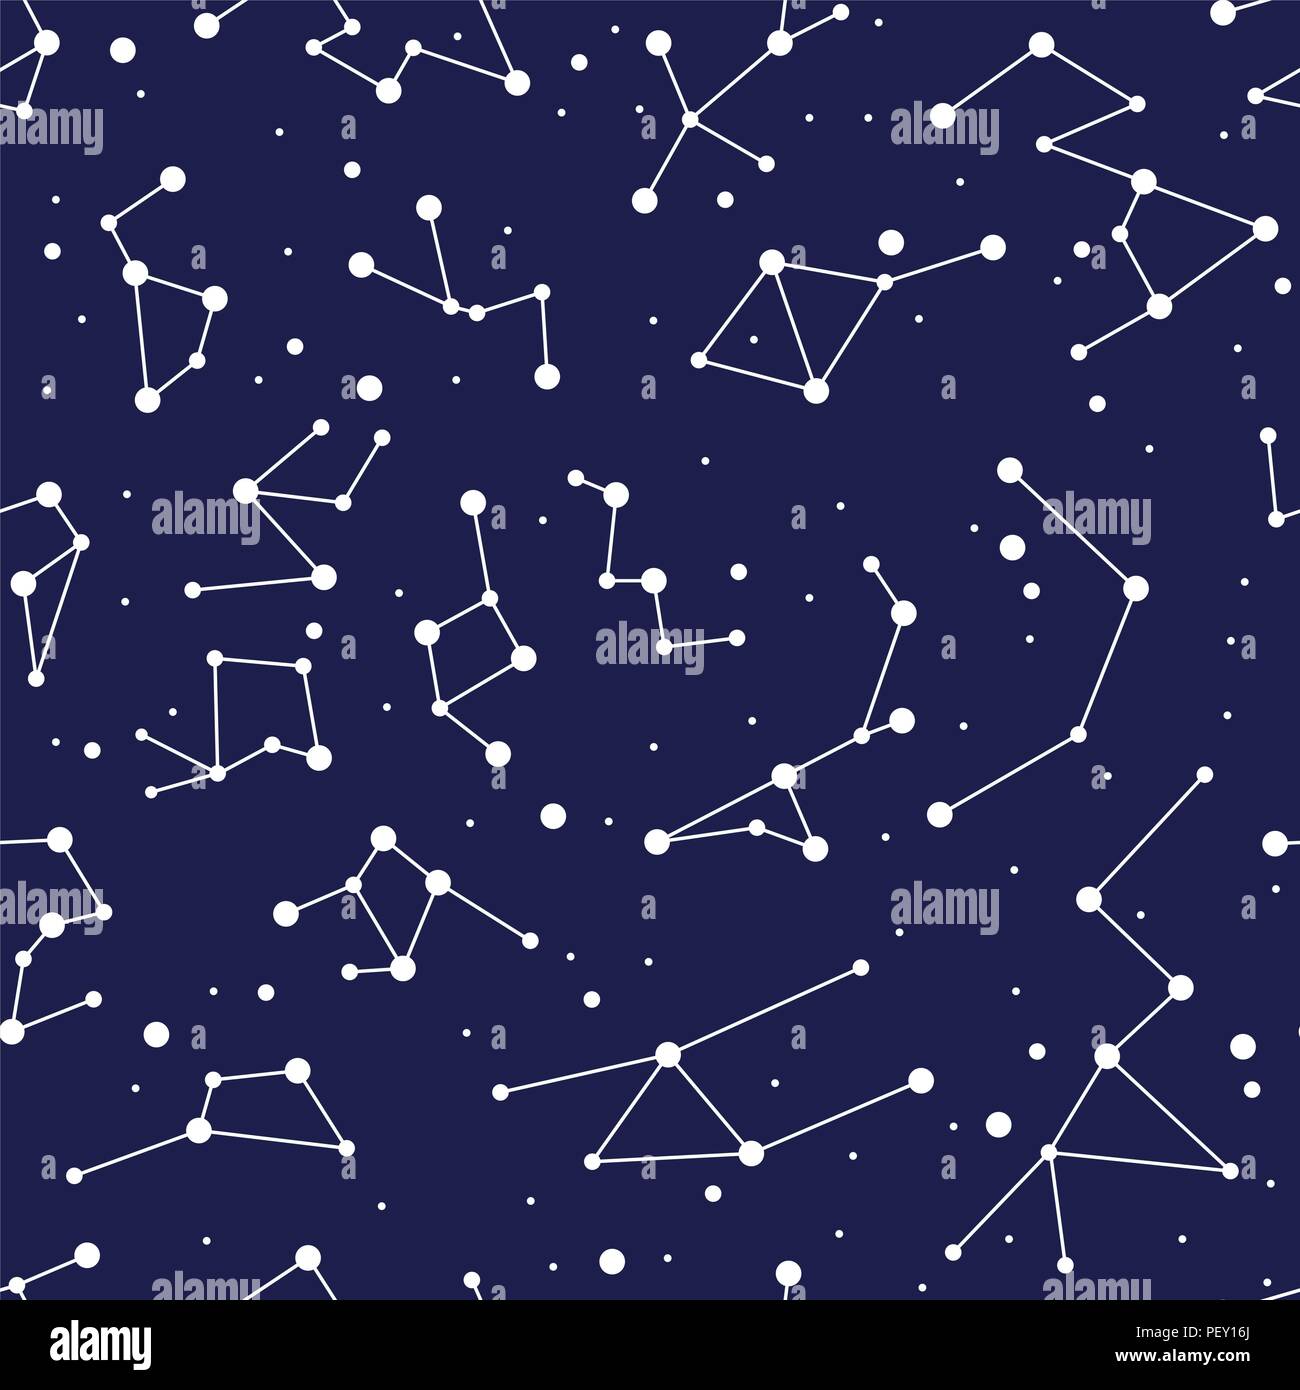 Constellation vecteur seamless background pattern. zodiac site d'étoiles dans un espace bleu. L'astronomie abstract illustration avec des symboles astrologiques. nigh Illustration de Vecteur